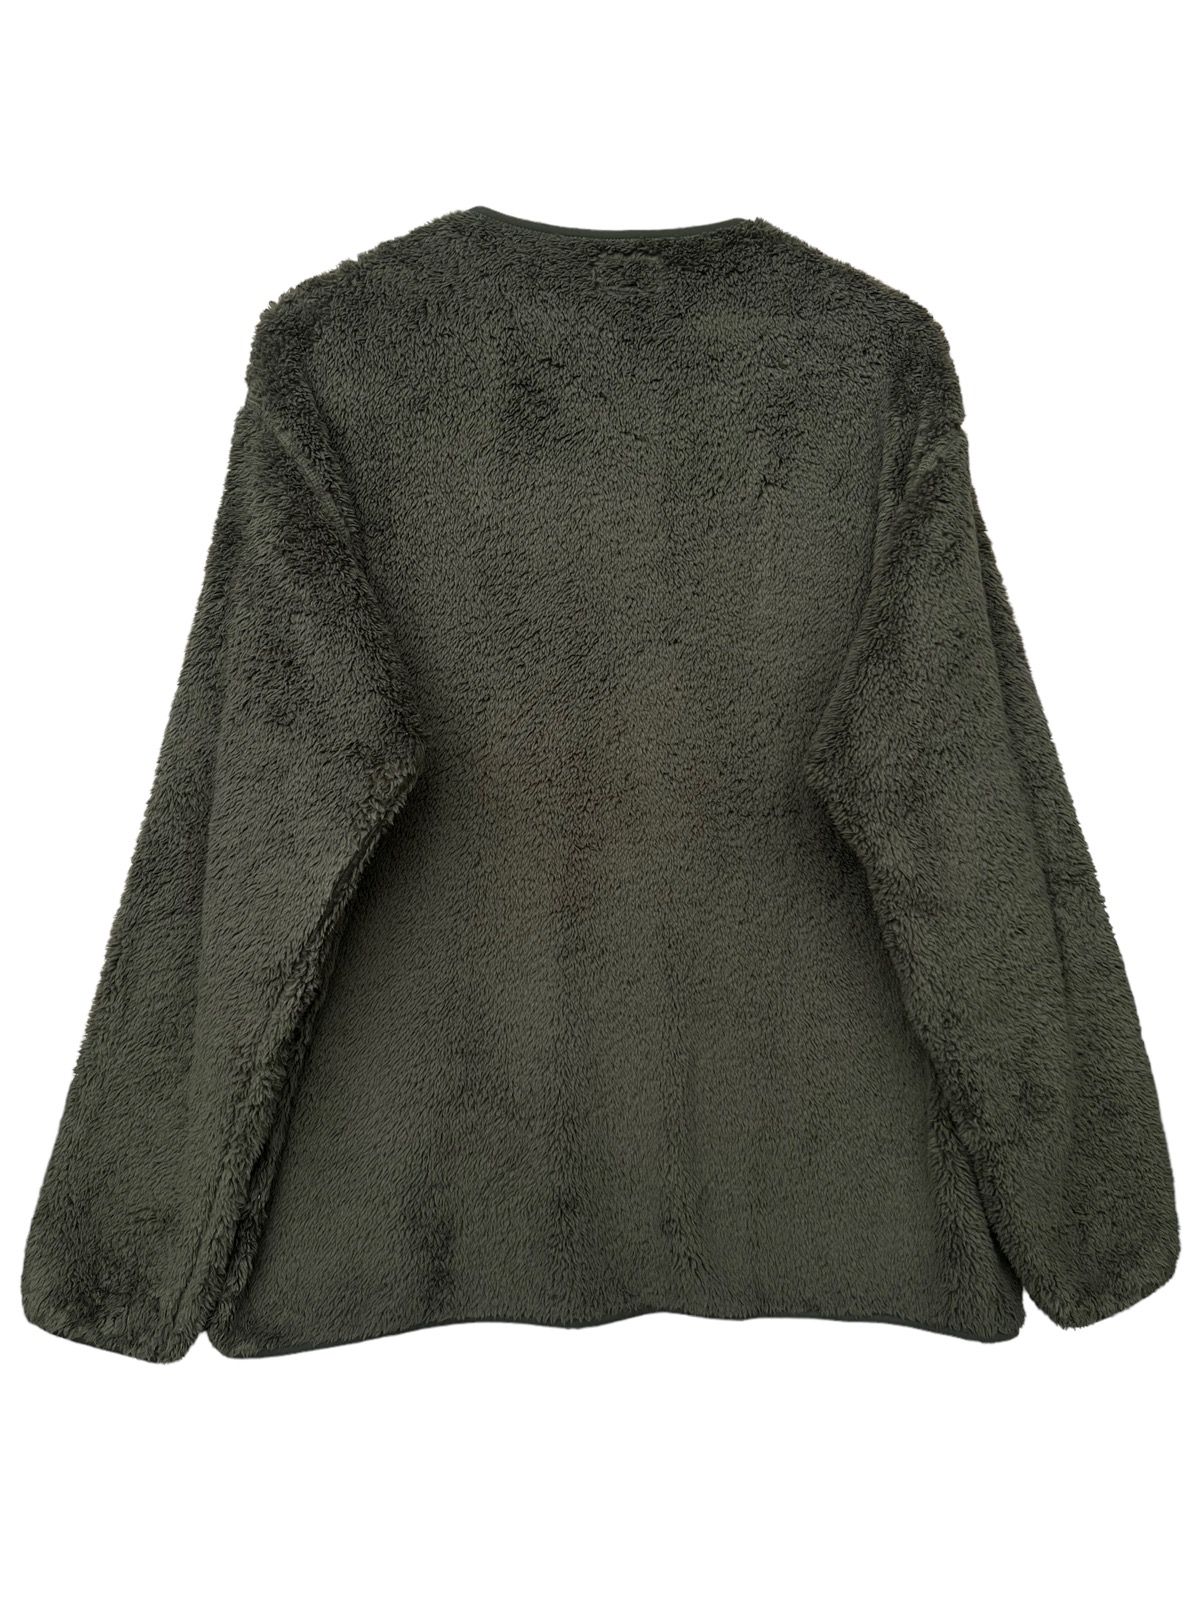 Engineered Garment Uniqlo Fleece Sweater - 4